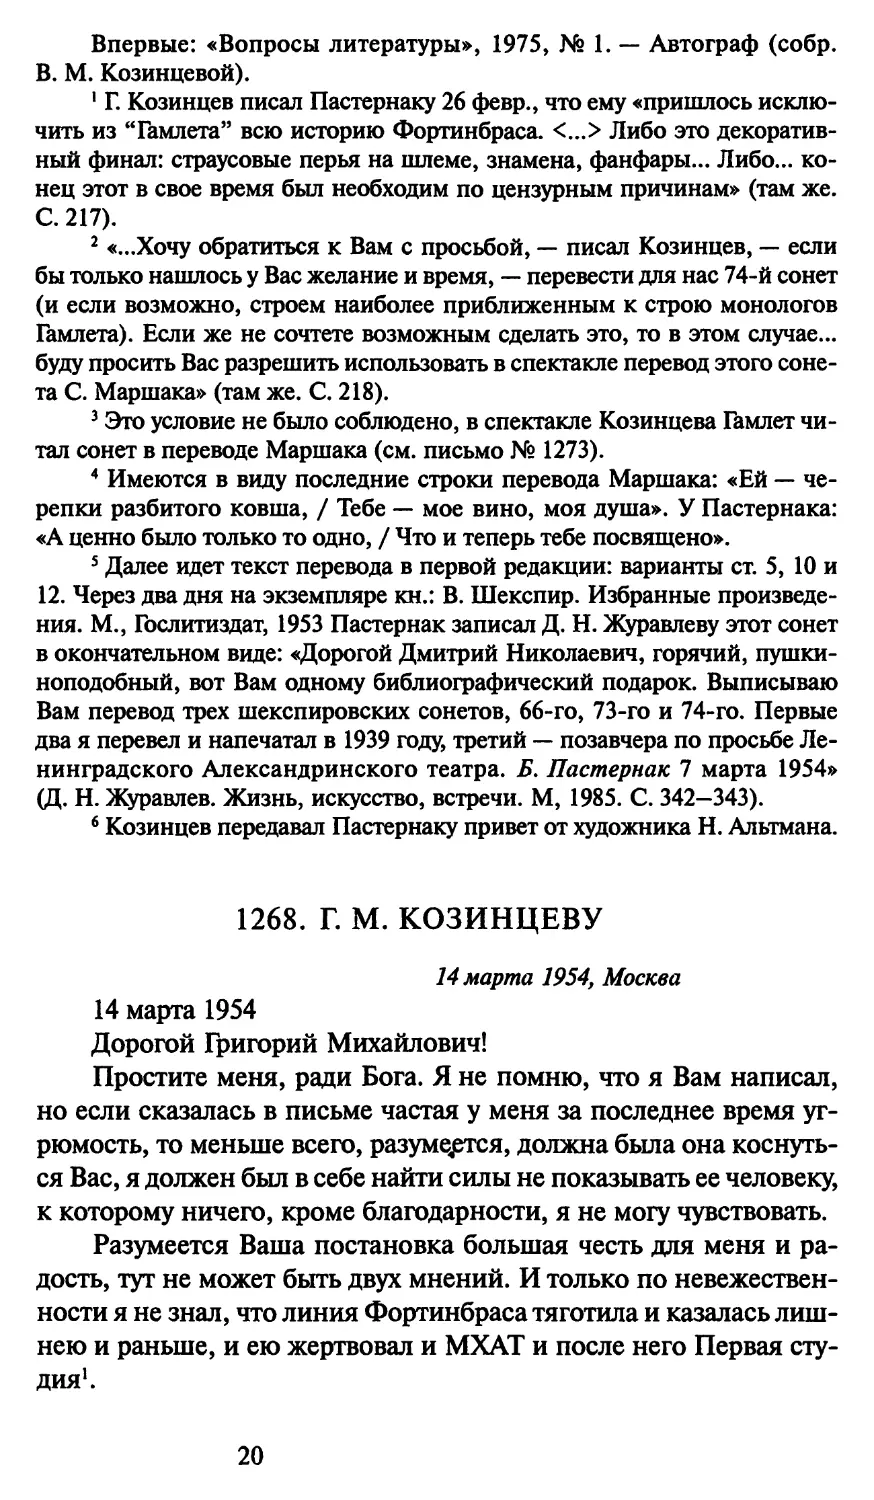 1268. Г. М. Козинцеву 14 марта 1954